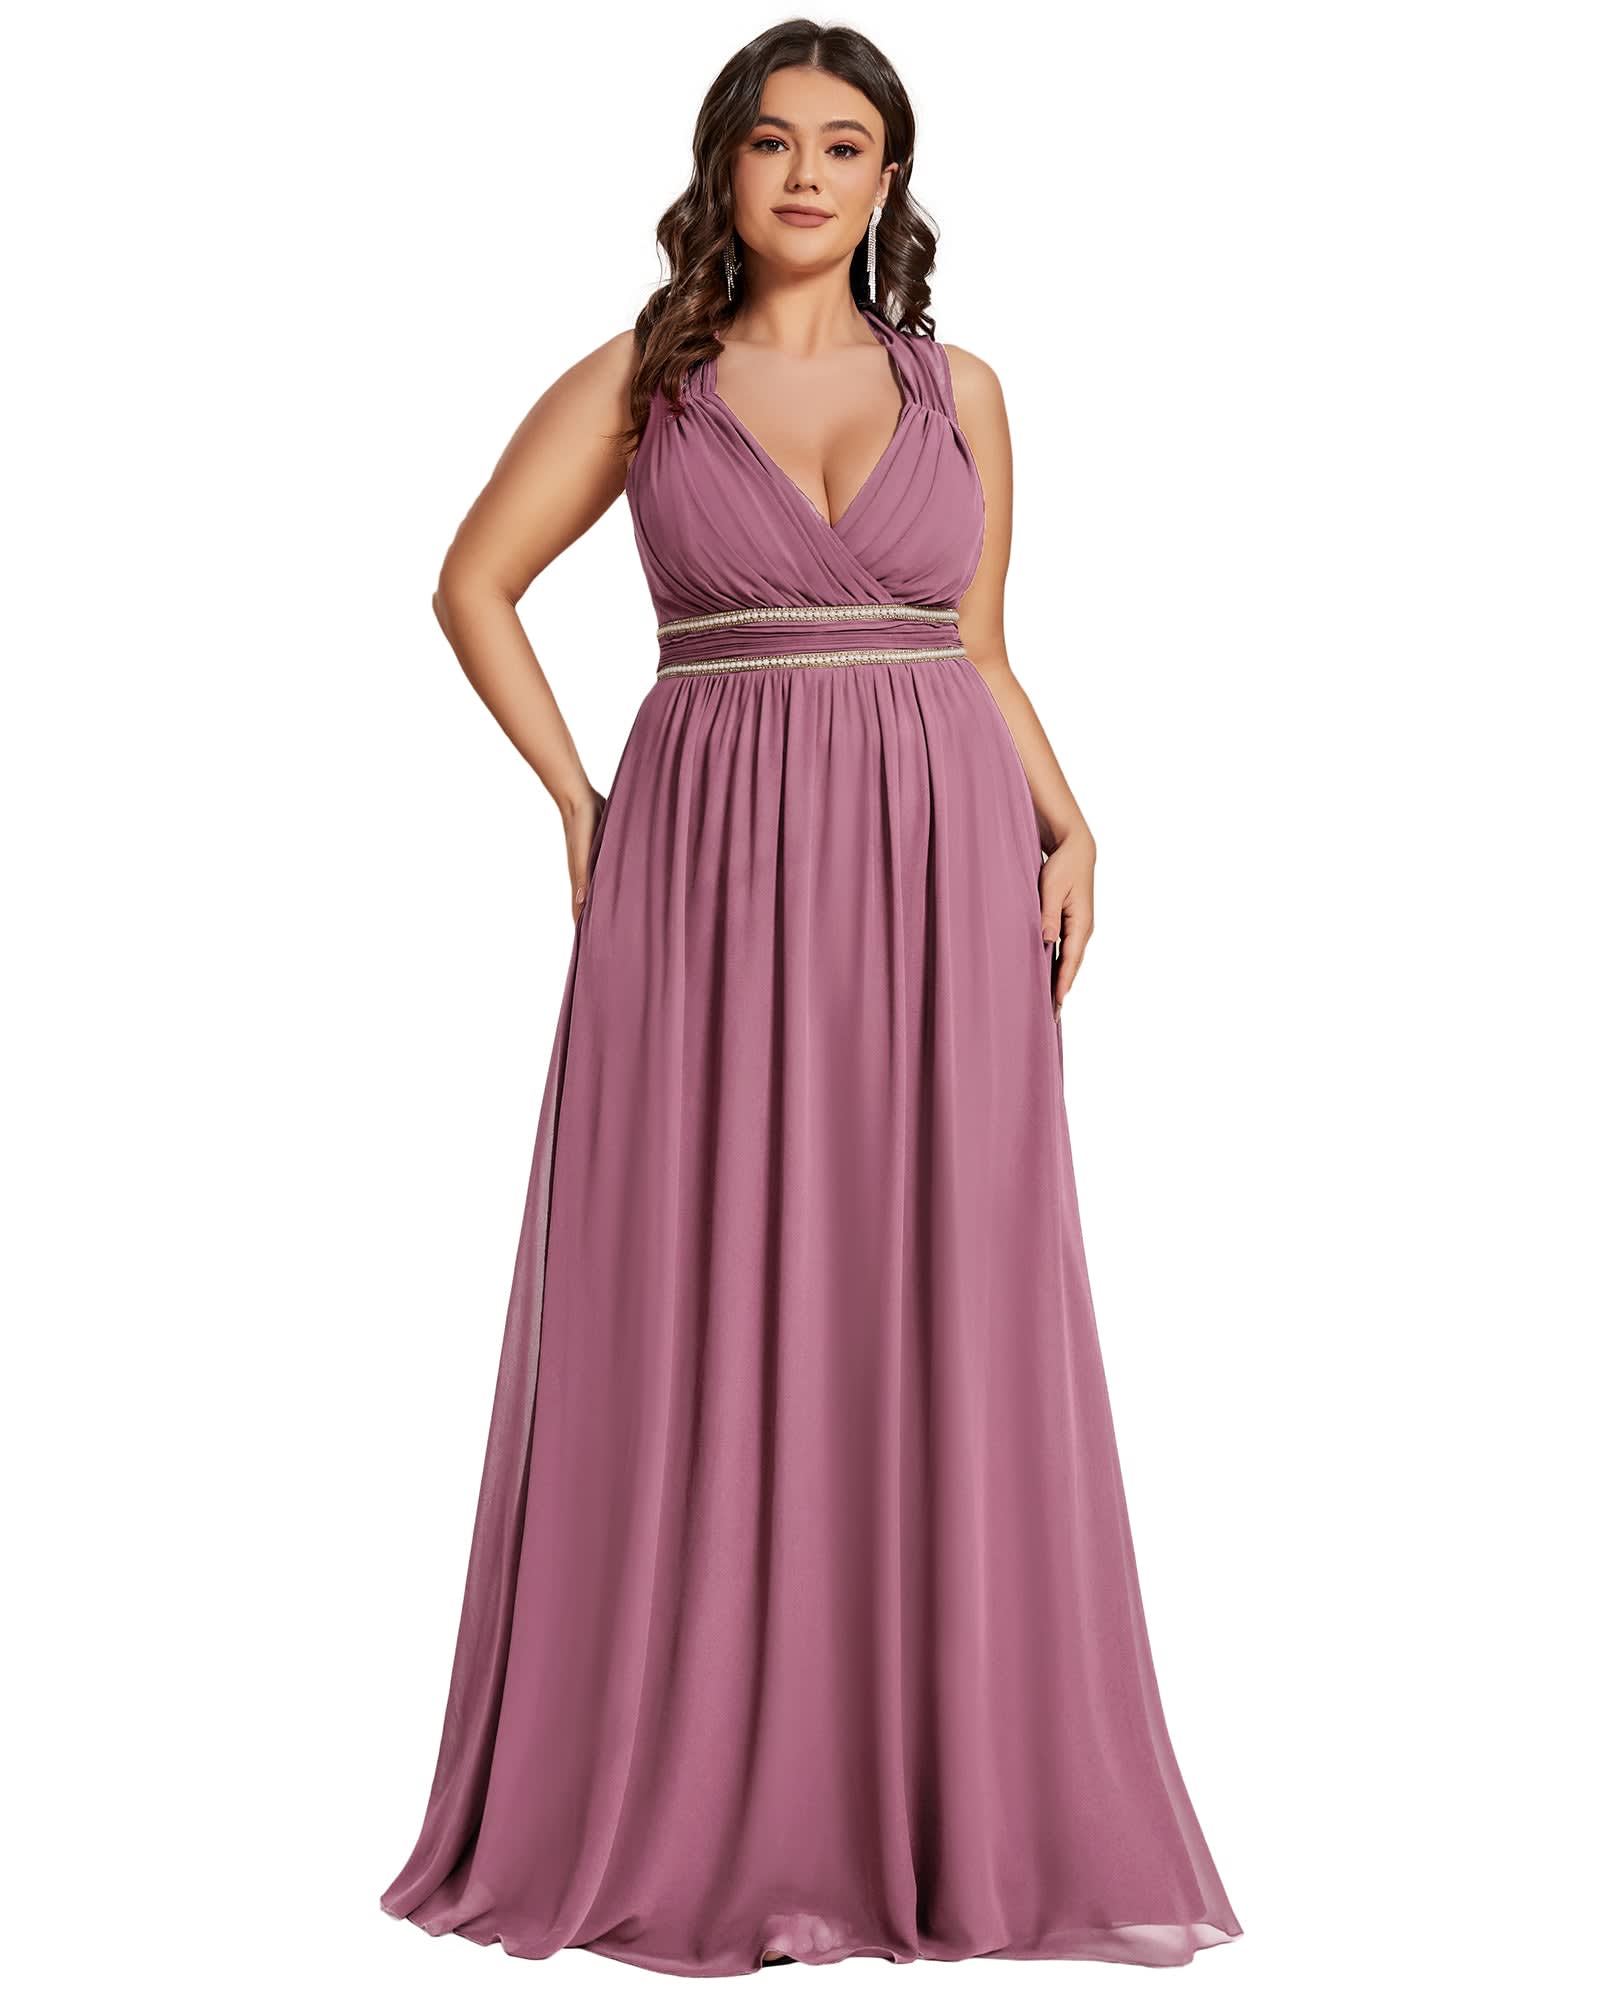 Chiffon V-Neckline Long Sleeve Formal Evening Dress